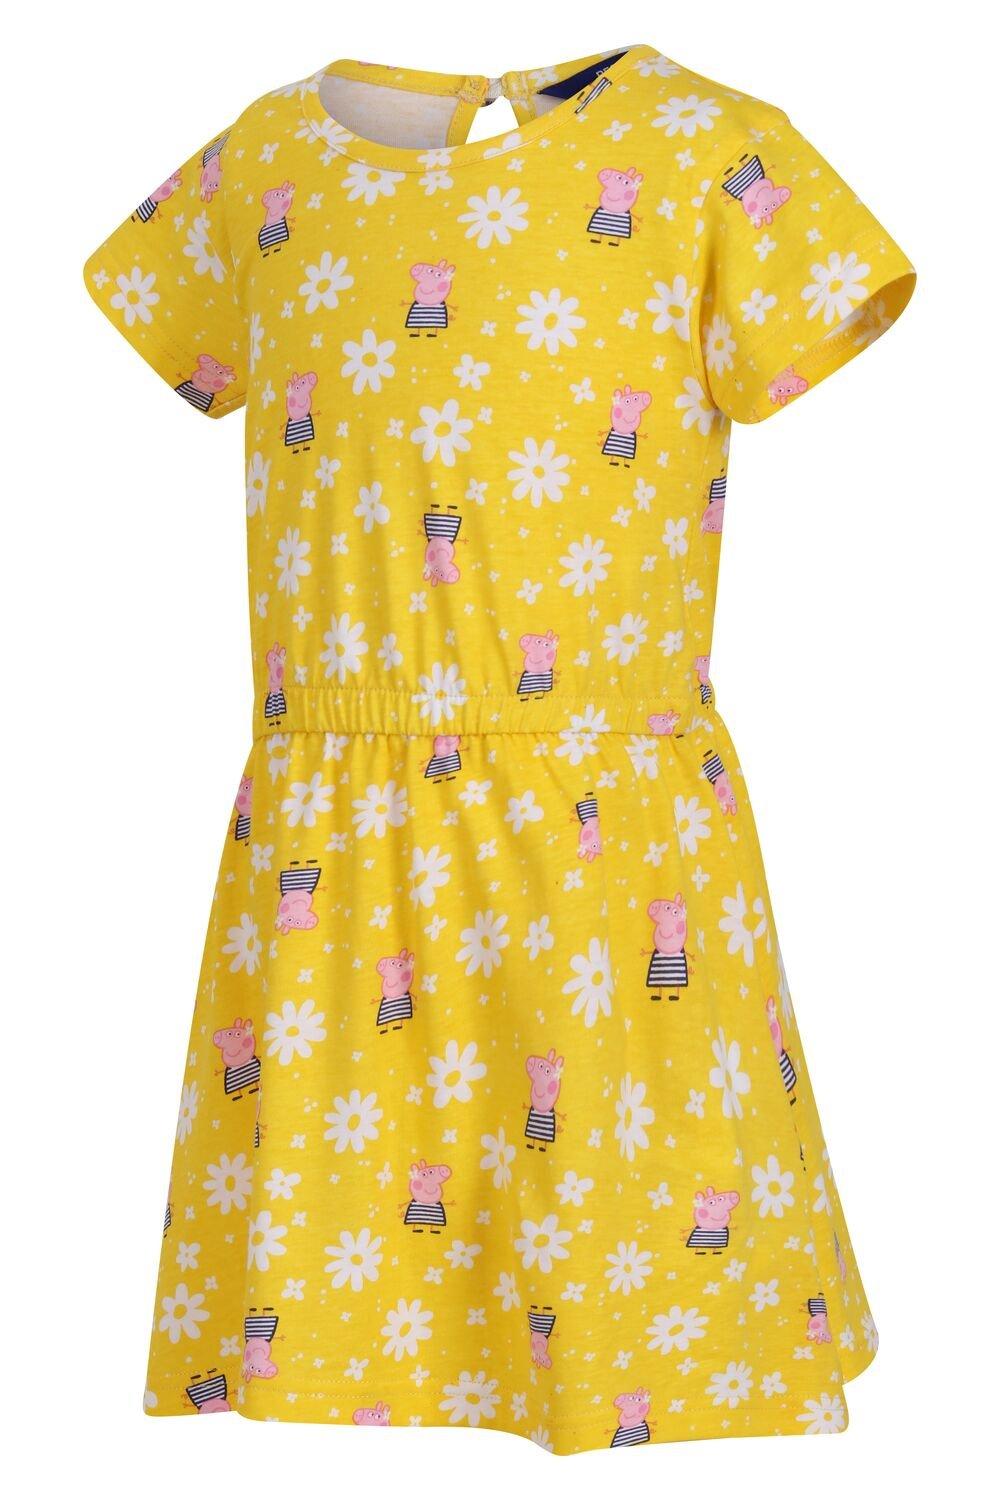 Платье из джерси Coolweave с короткими рукавами и надписью Свинка Пеппа Regatta, желтый адвент календарь свинка пеппа для детей